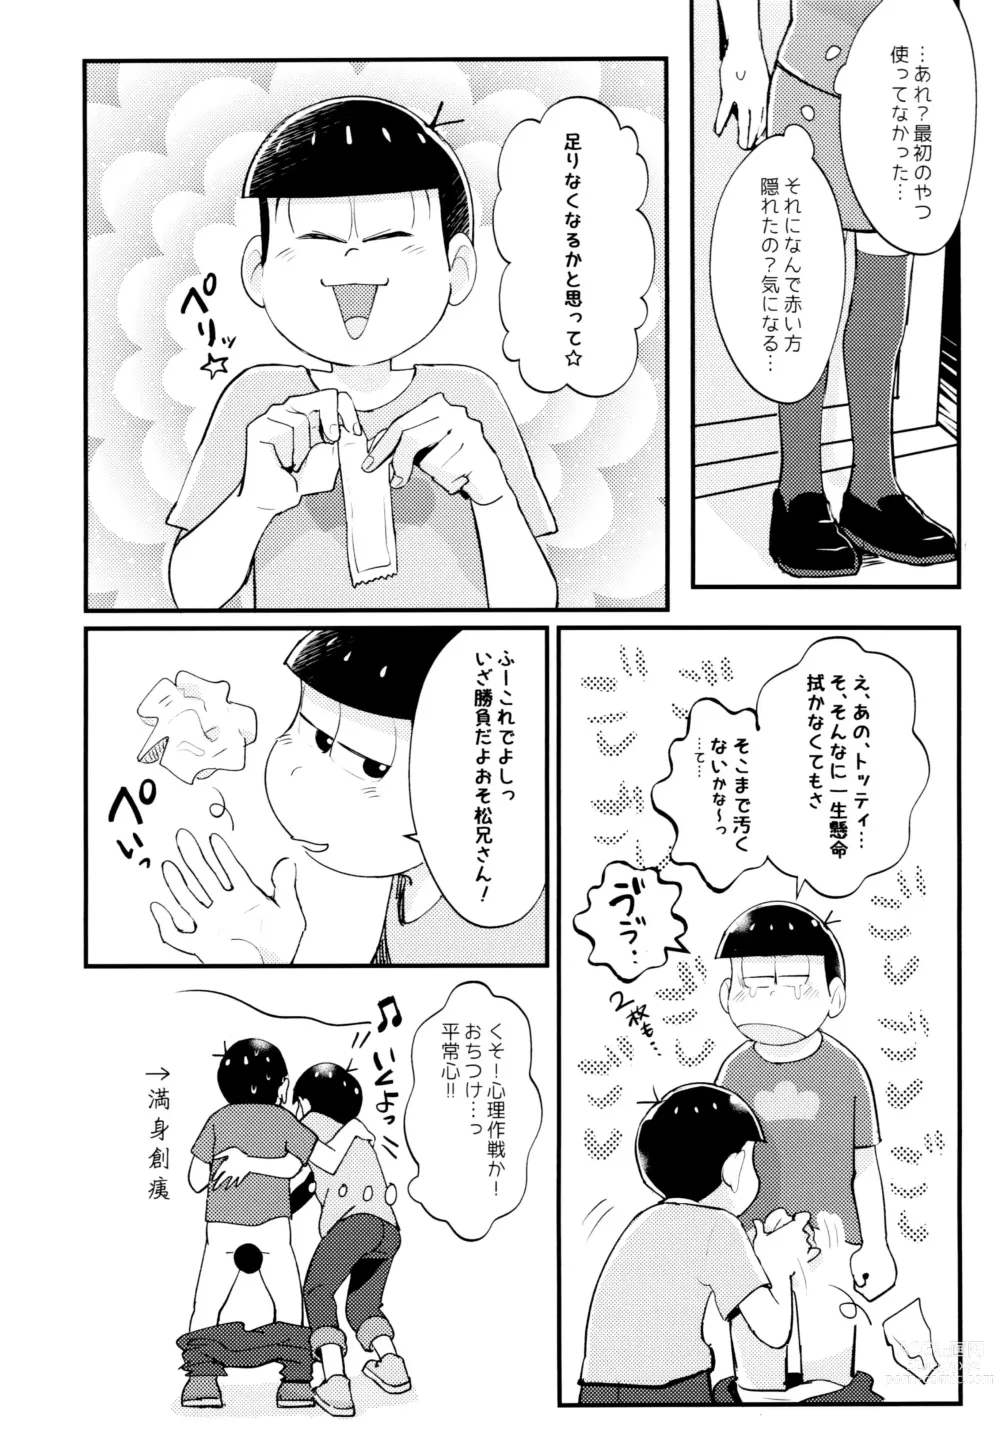 Page 9 of doujinshi Manatsu no!! Shikoshiko Karaoke Dai Battle!!